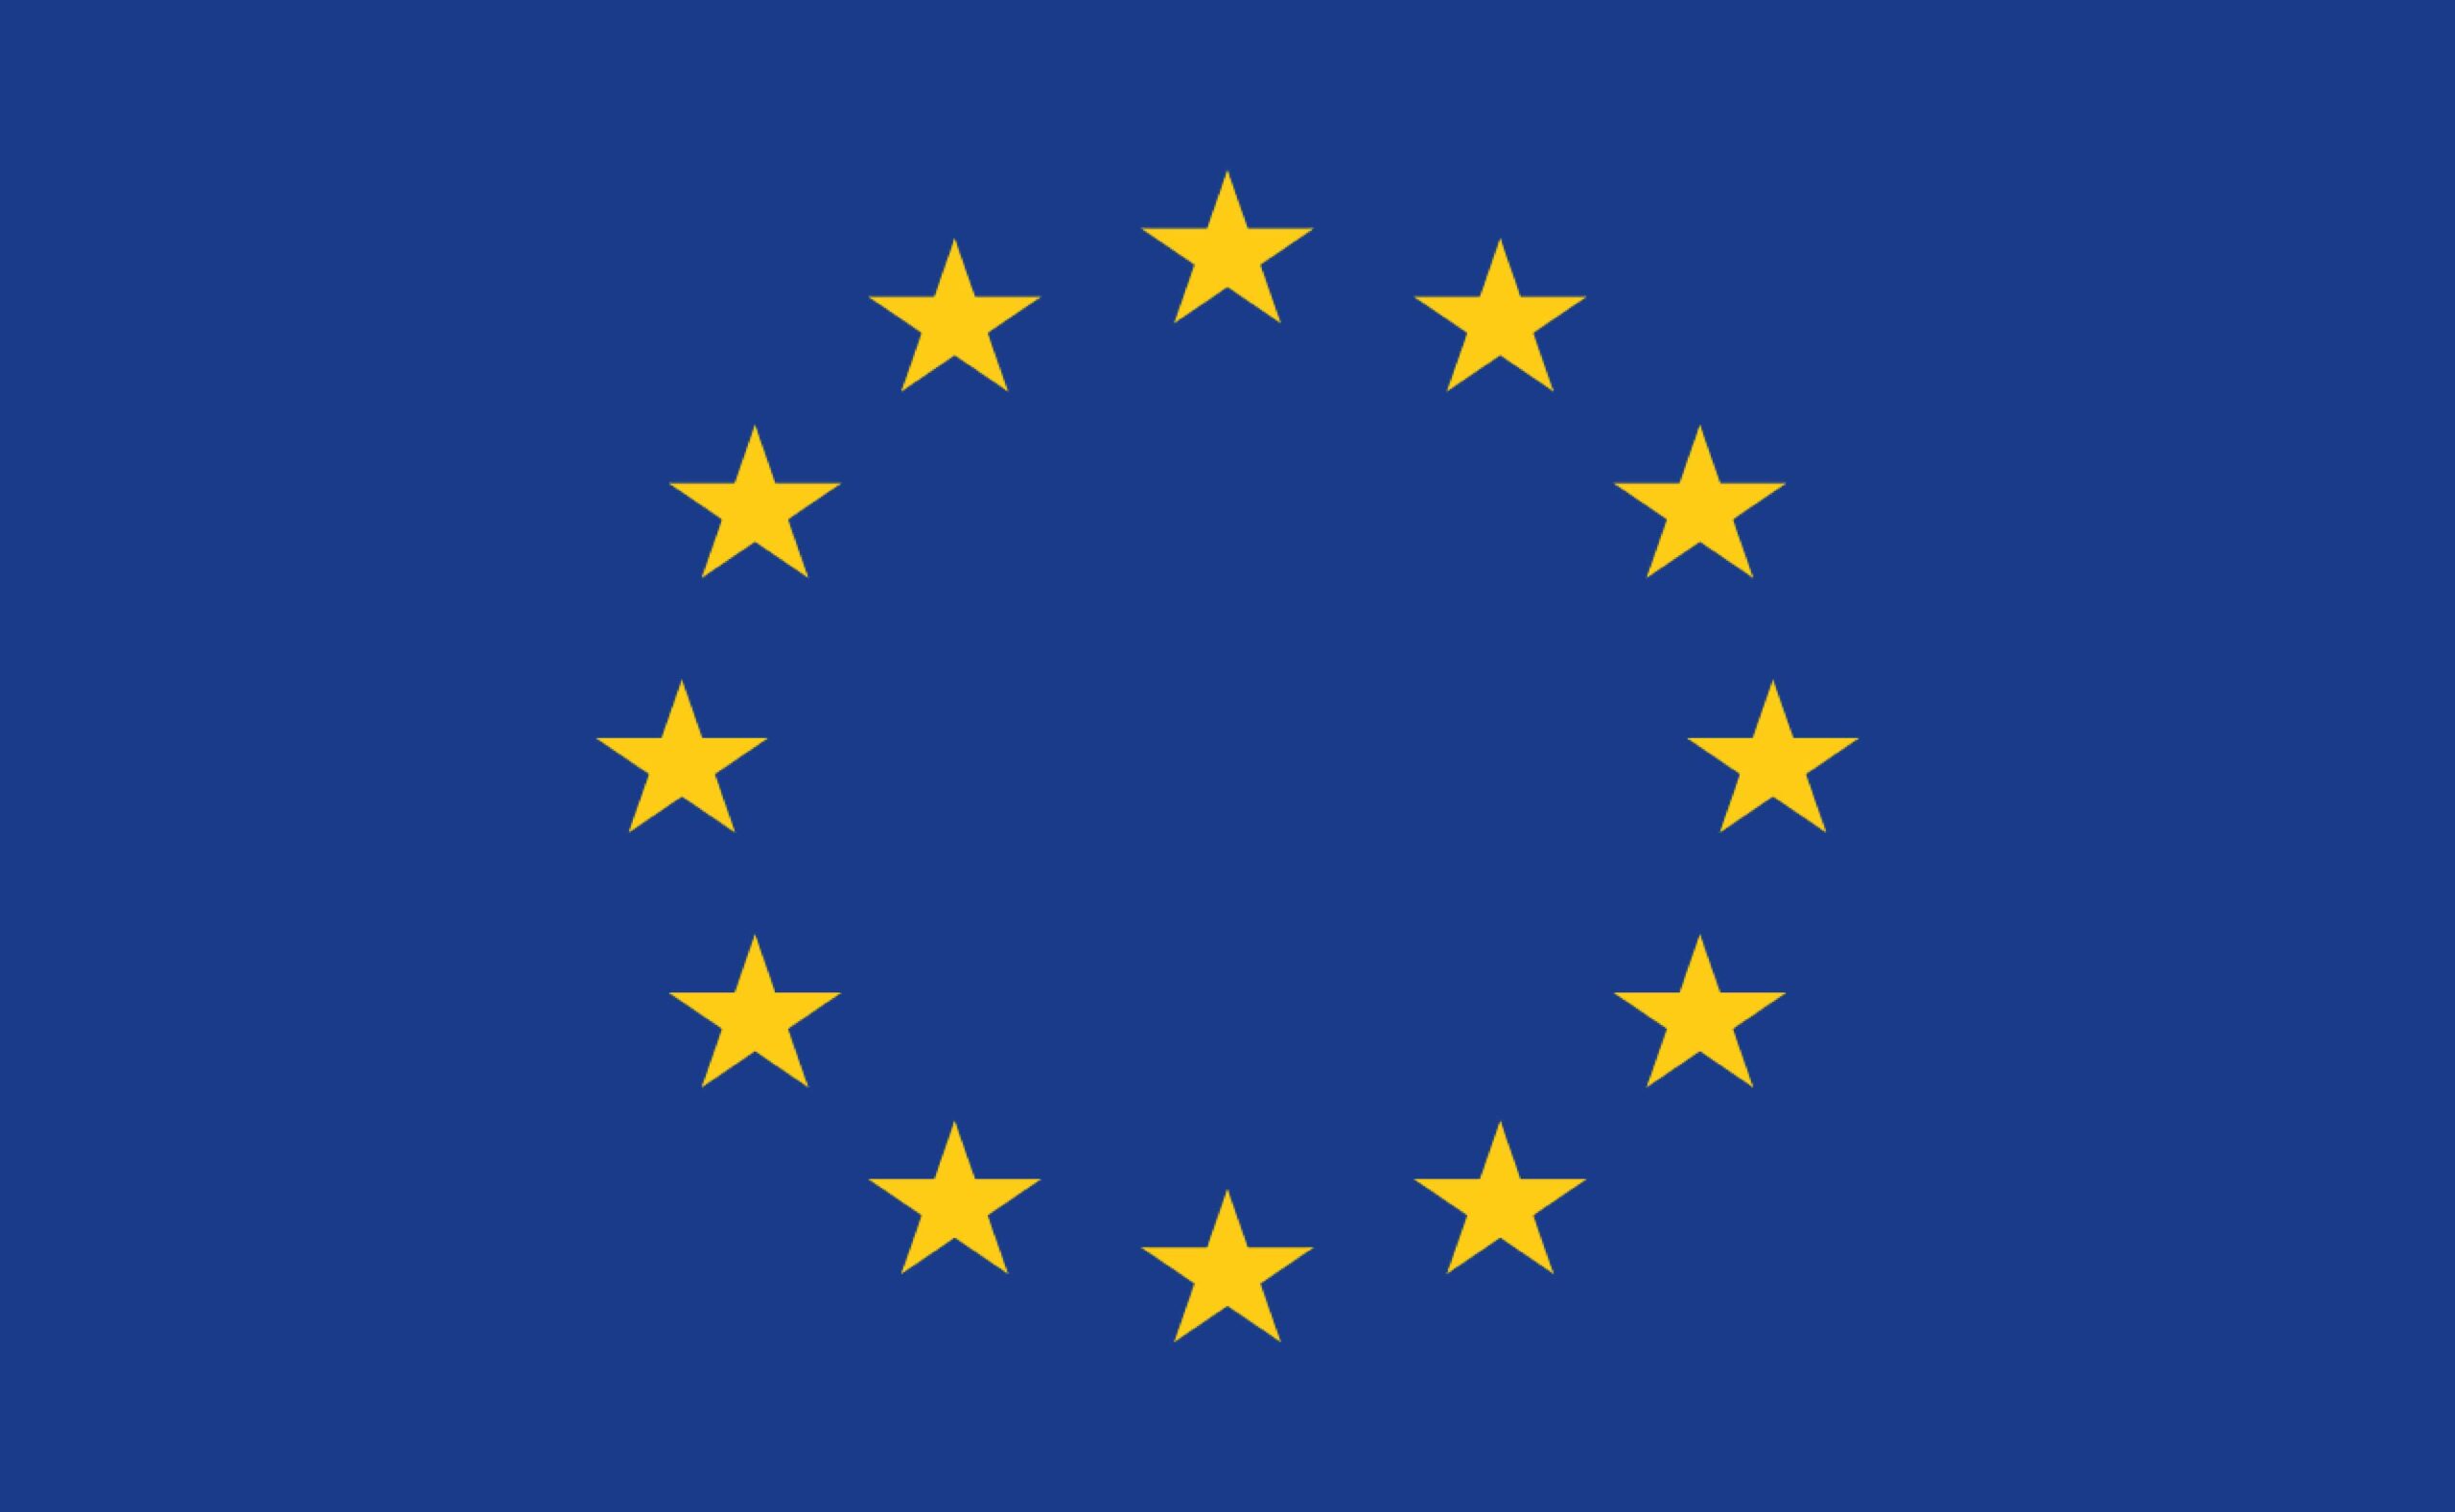 Celebra la unidad y diversidad de Europa con nuestra hermosa Bandera Europea